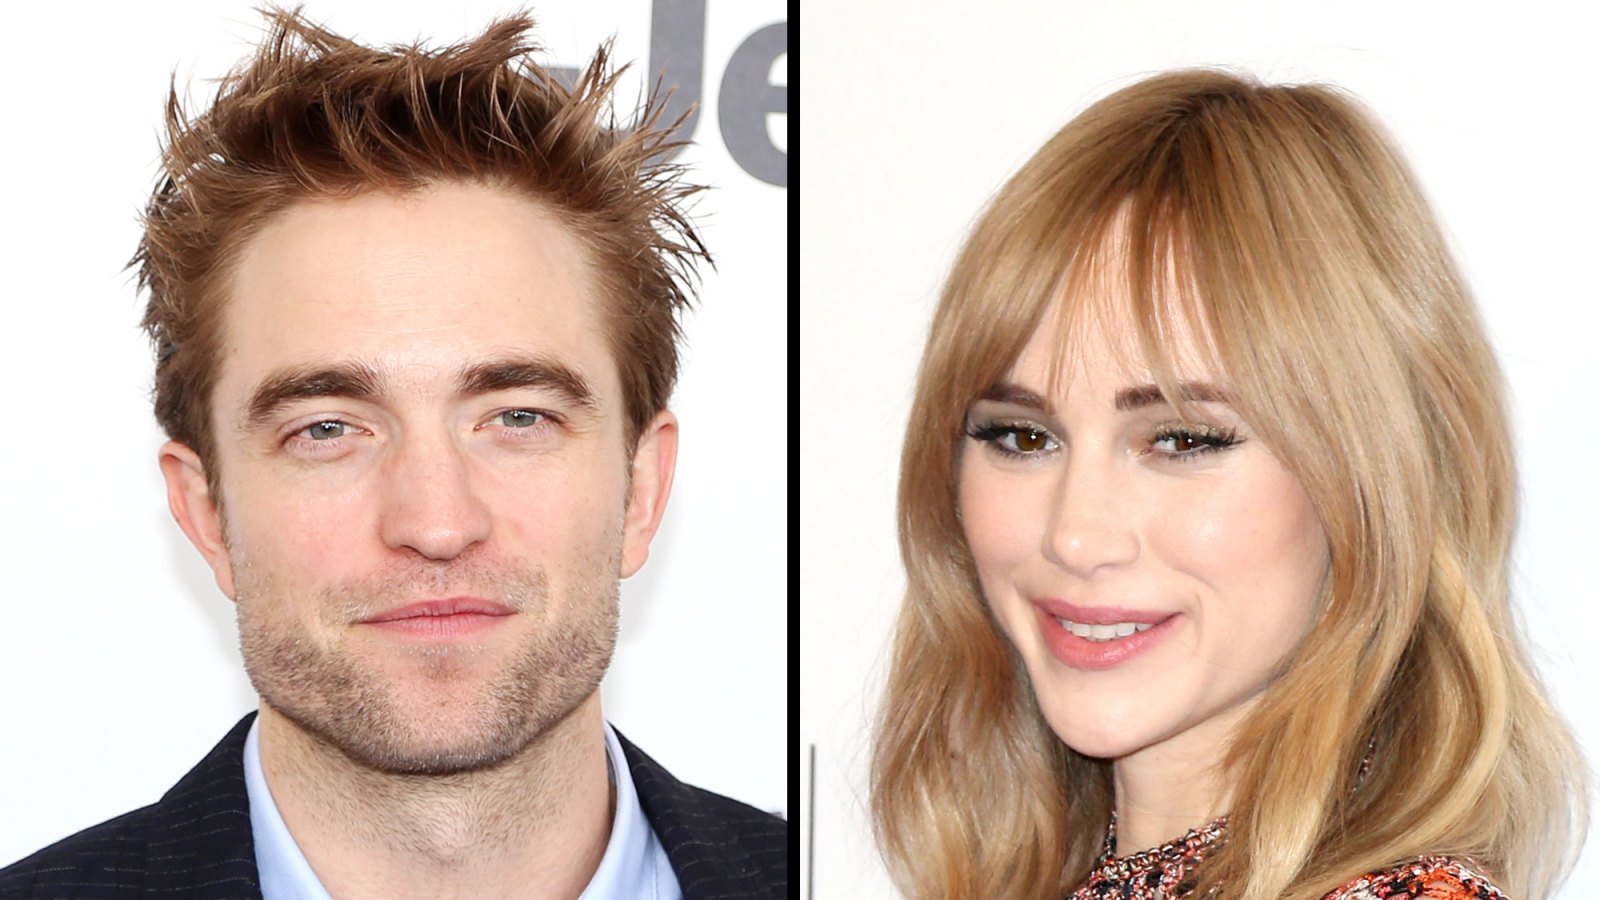 Robert Pattinson Suki Waterhouse new couple alert